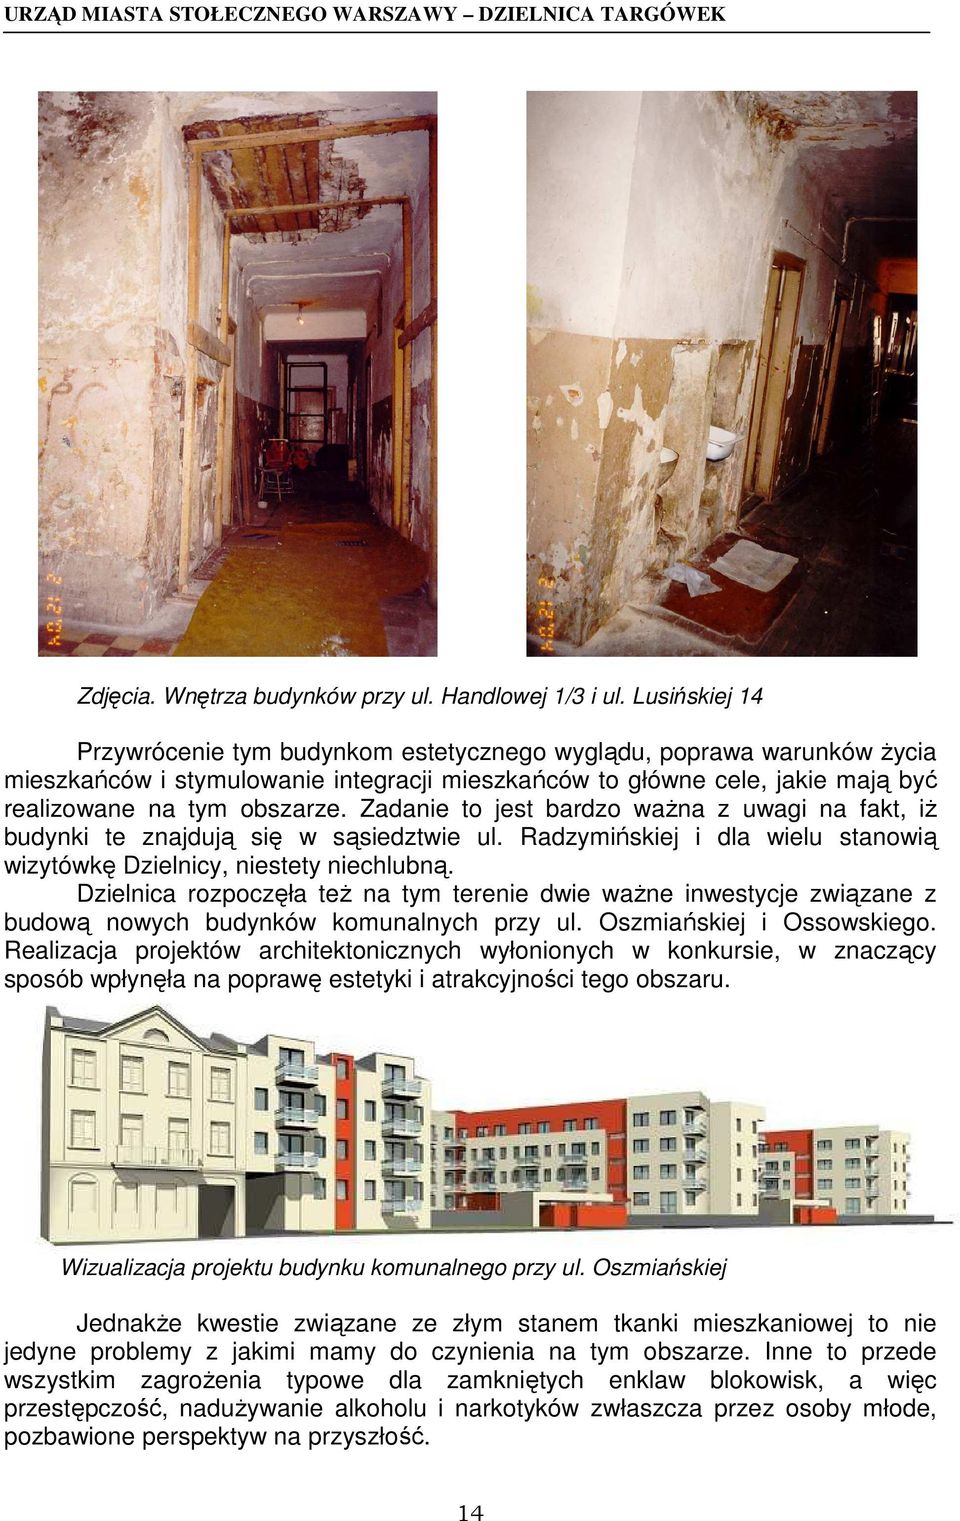 Zadanie to jest bardzo waŝna z uwagi na fakt, iŝ budynki te znajdują się w sąsiedztwie ul. Radzymińskiej i dla wielu stanowią wizytówkę Dzielnicy, niestety niechlubną.